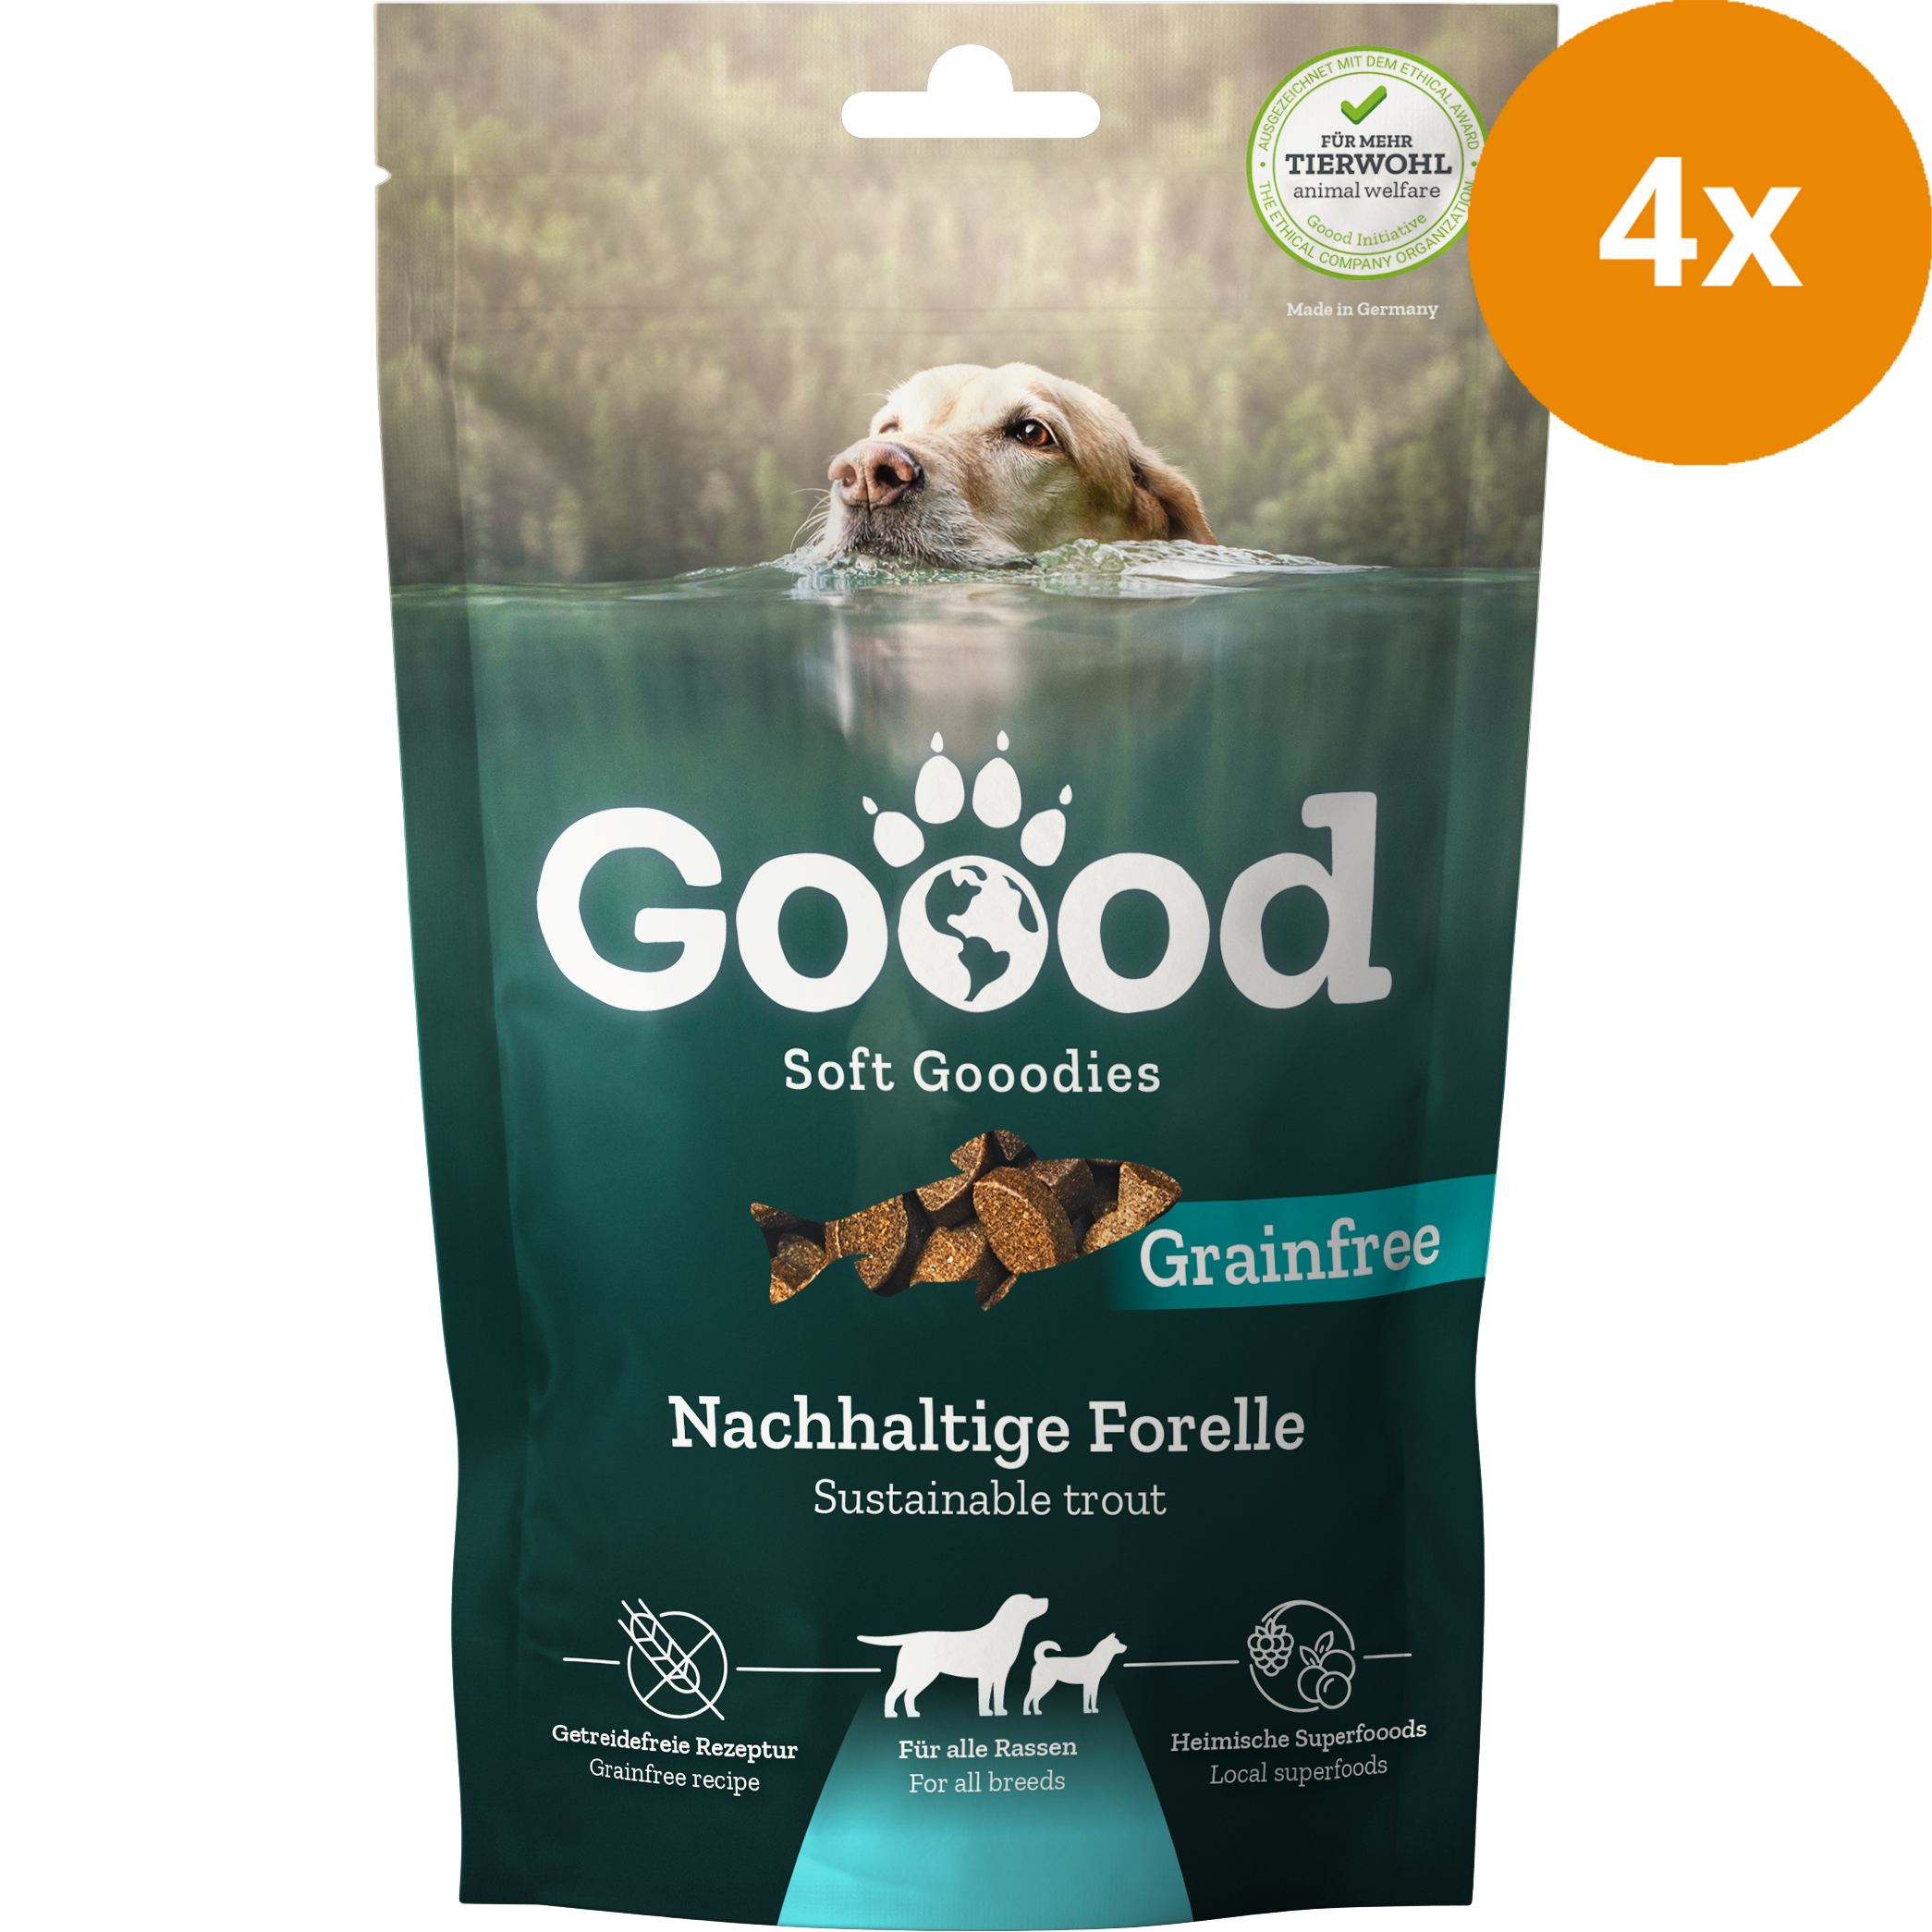 Goood SoftGoodies Nachhaltige Forelle 100 g